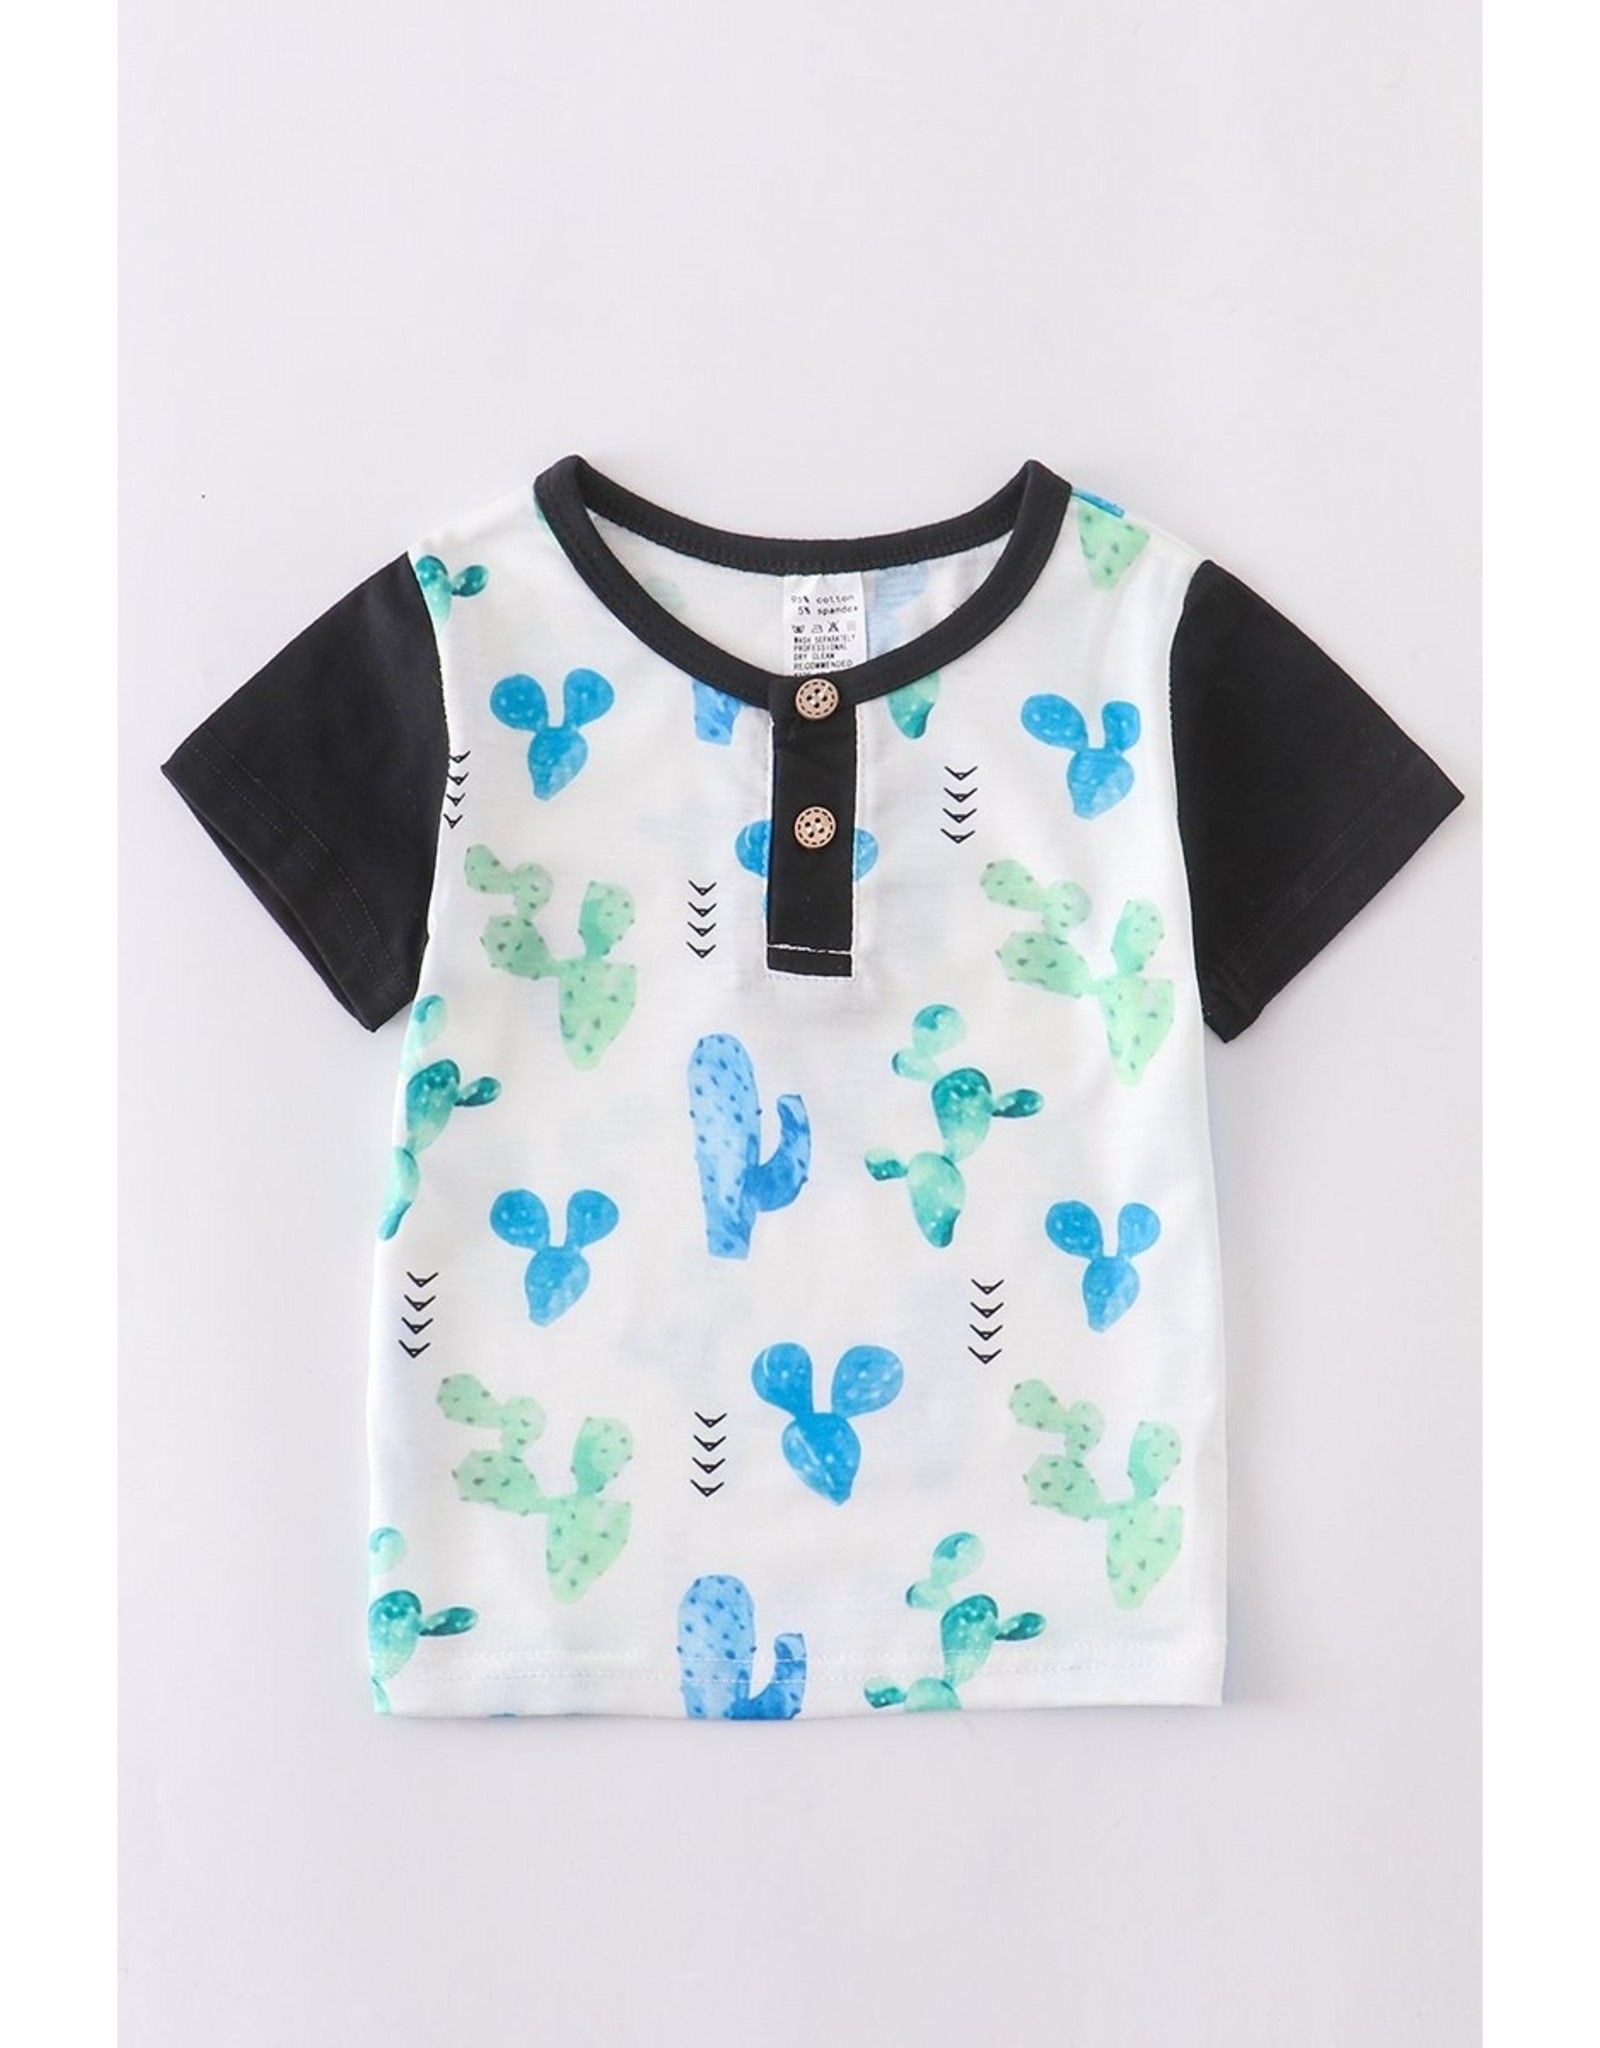 Cactus Toddler Boy Shirt